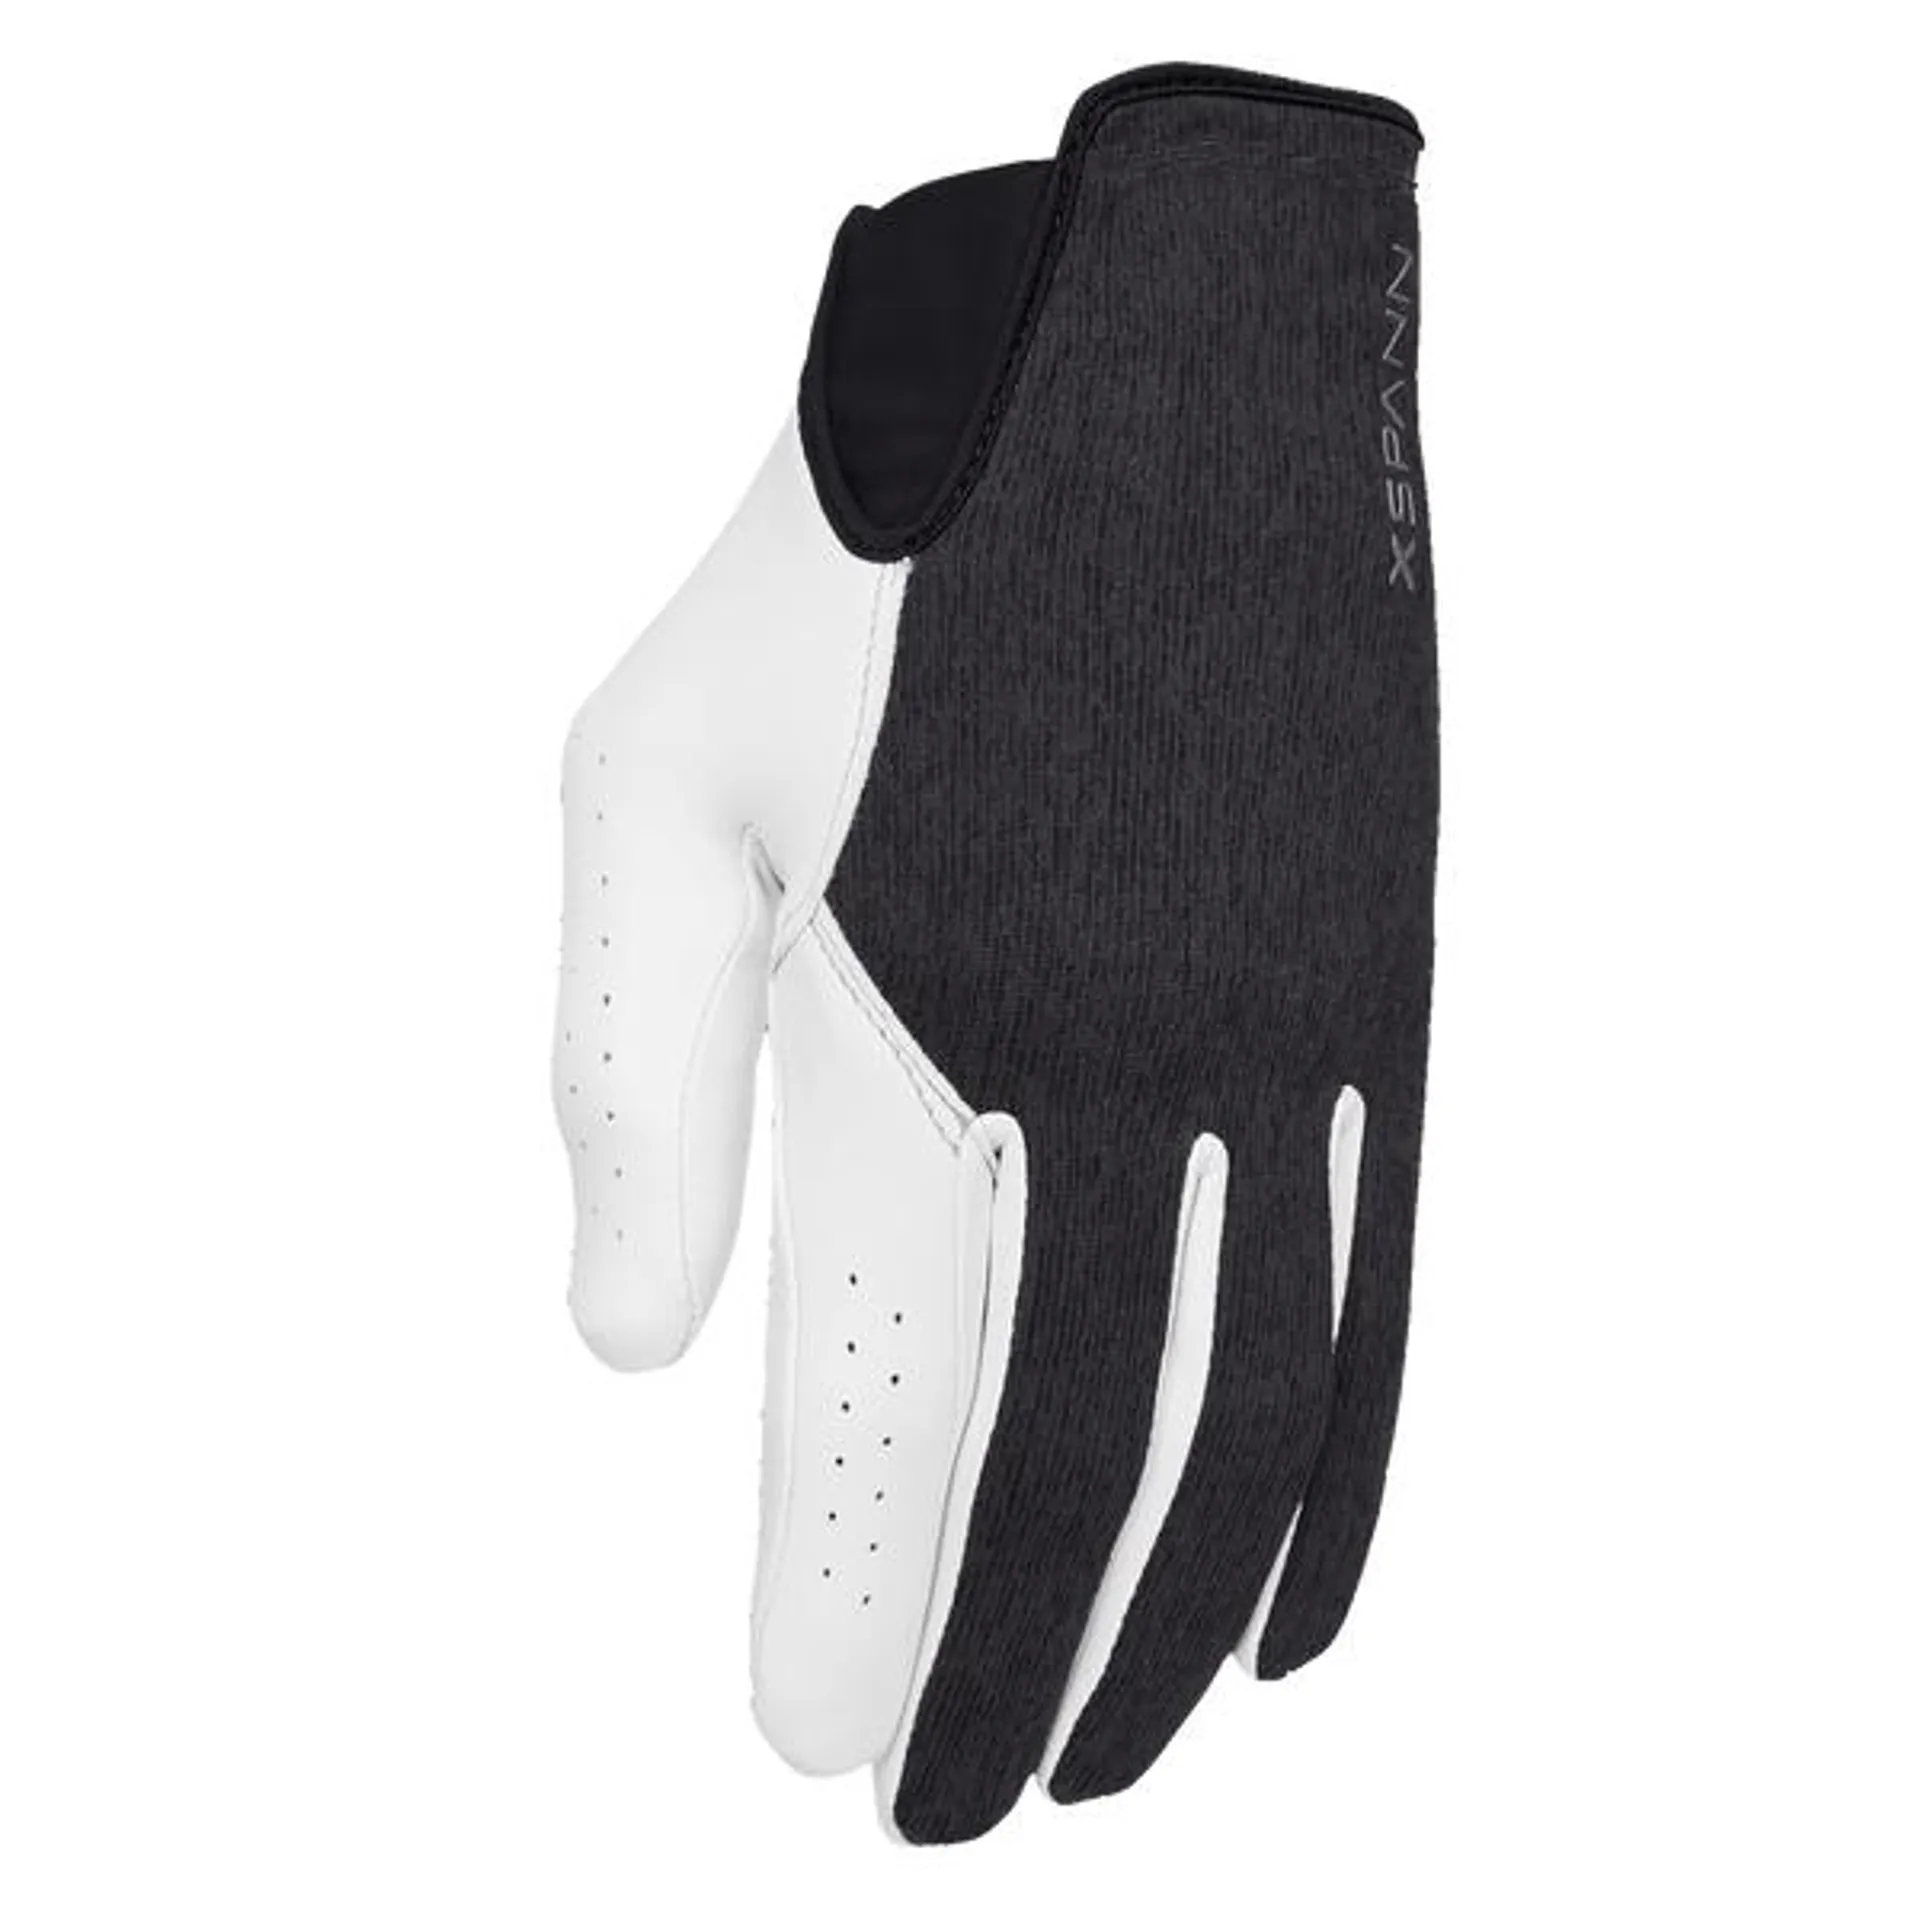 X-Spann Glove